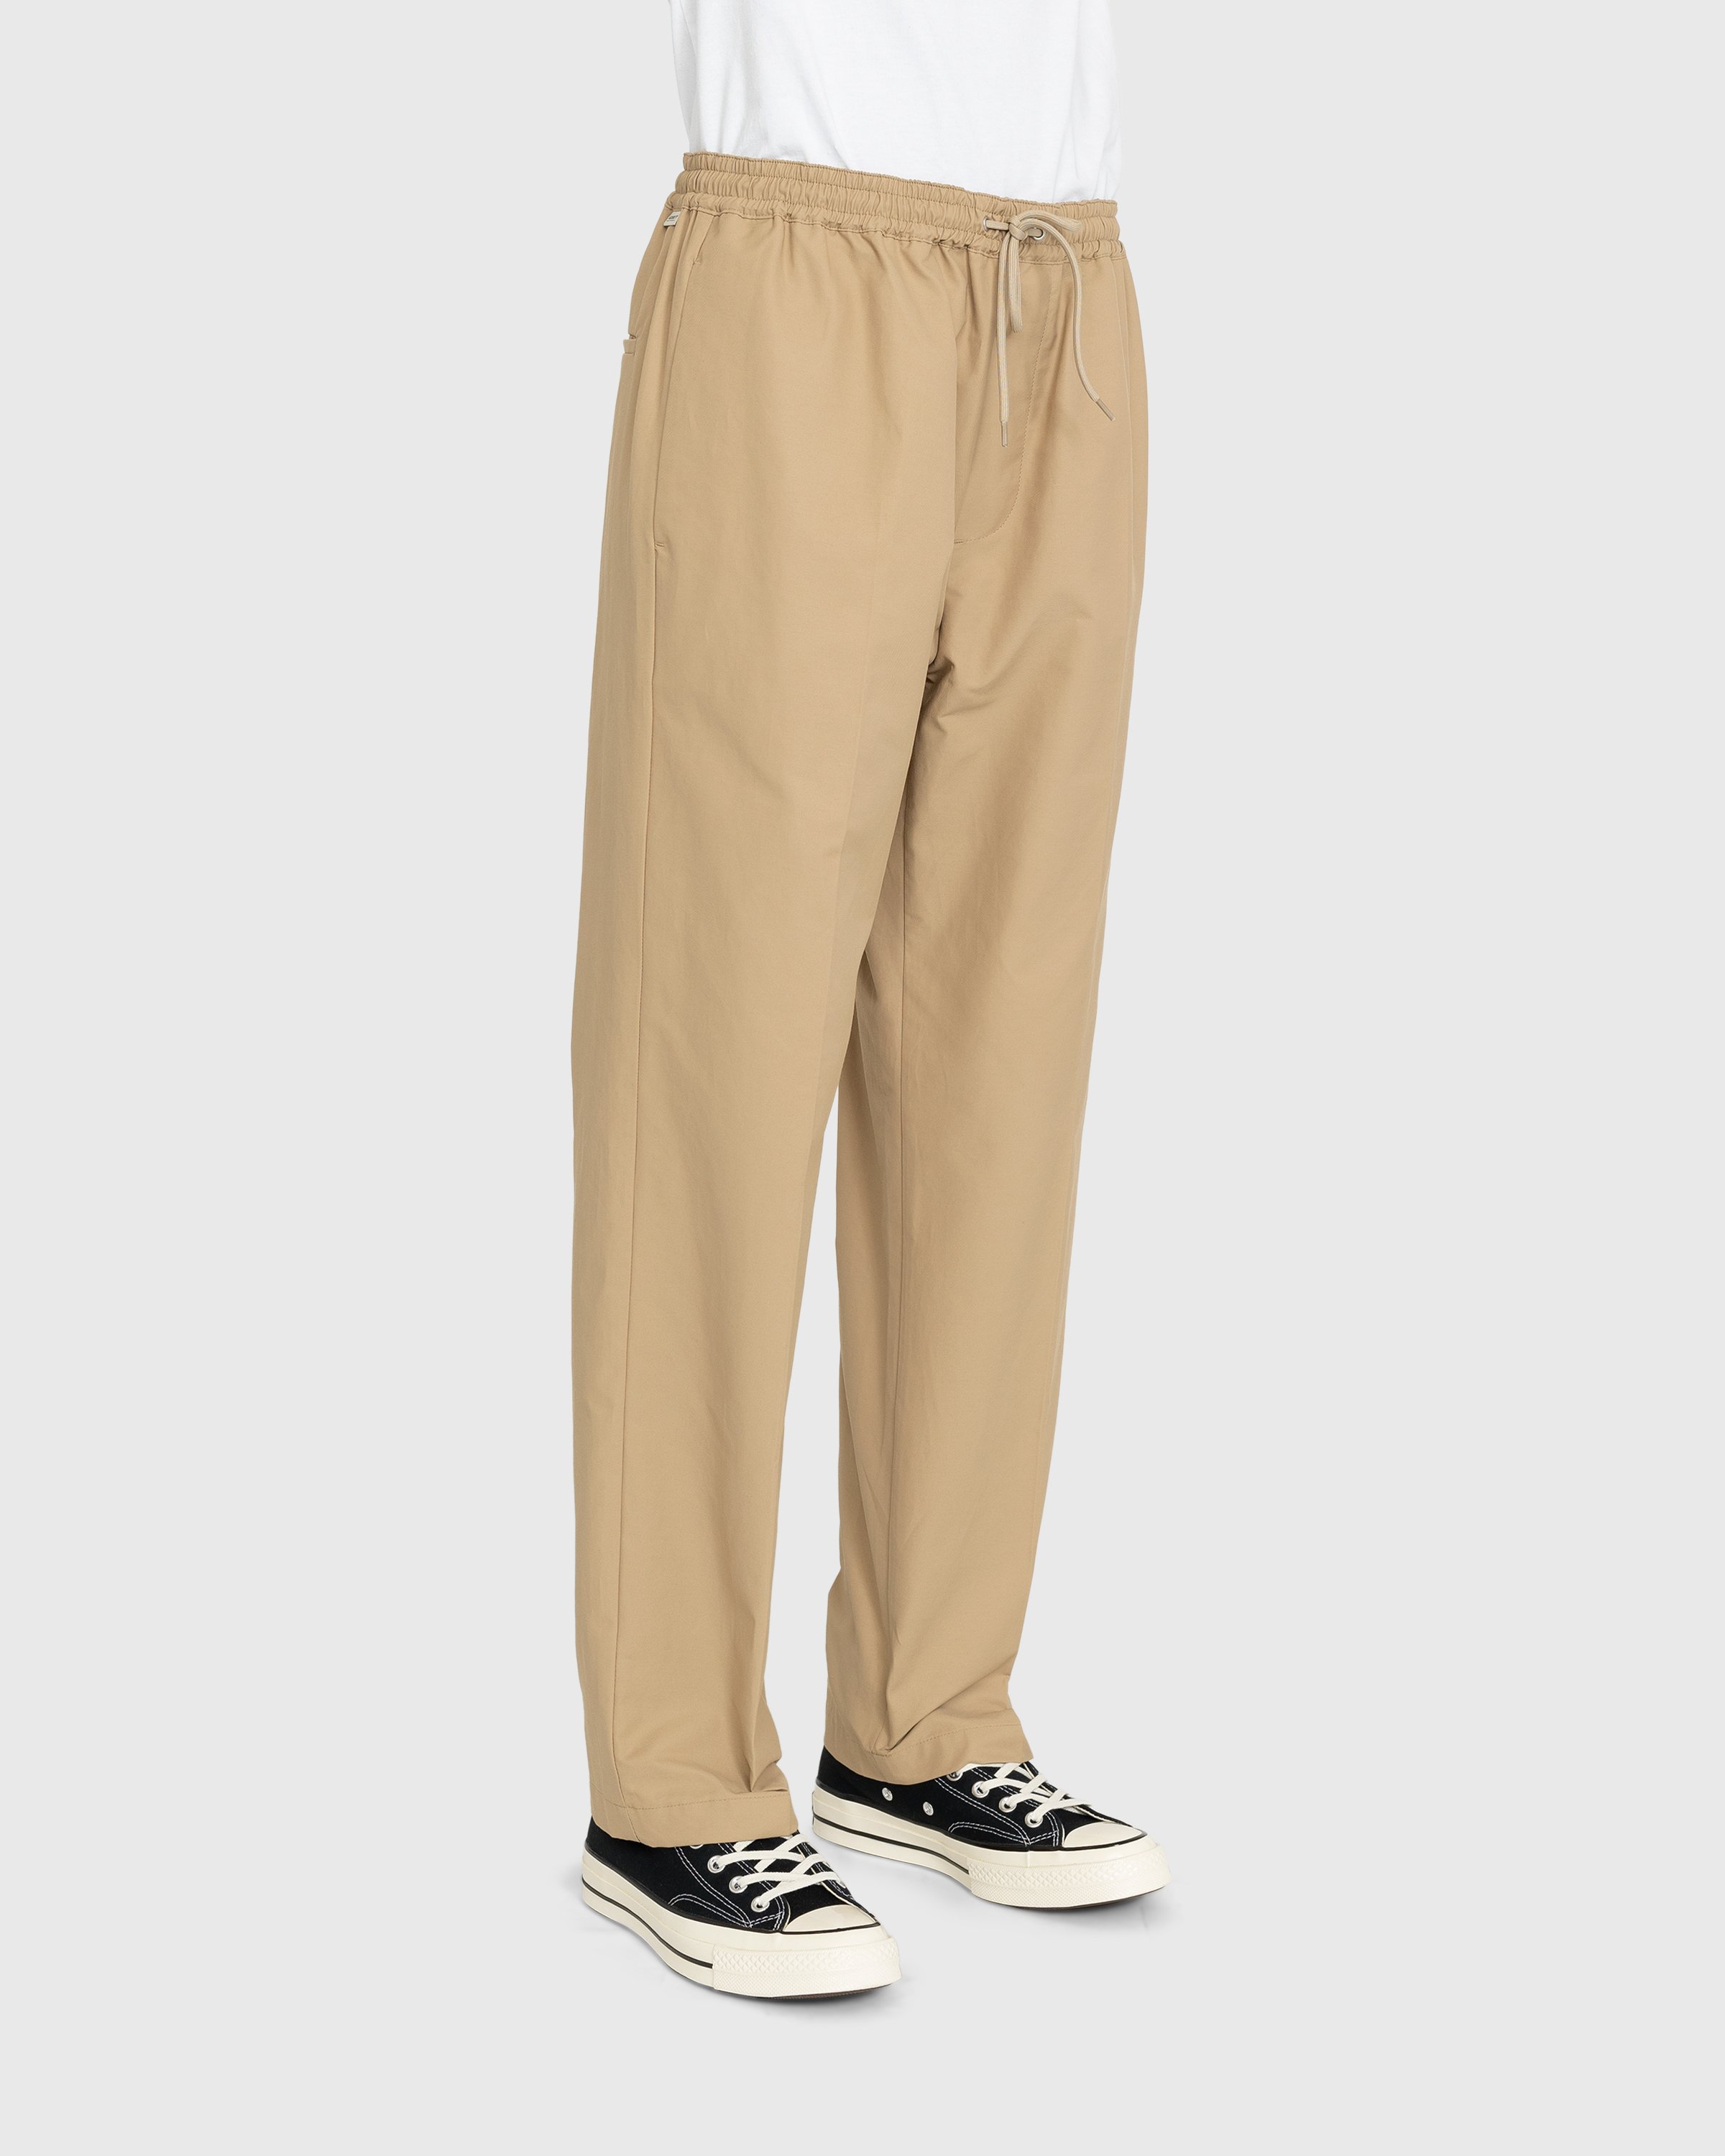 Highsnobiety - Cotton Nylon Elastic Pants Beige - Clothing - Beige - Image 3